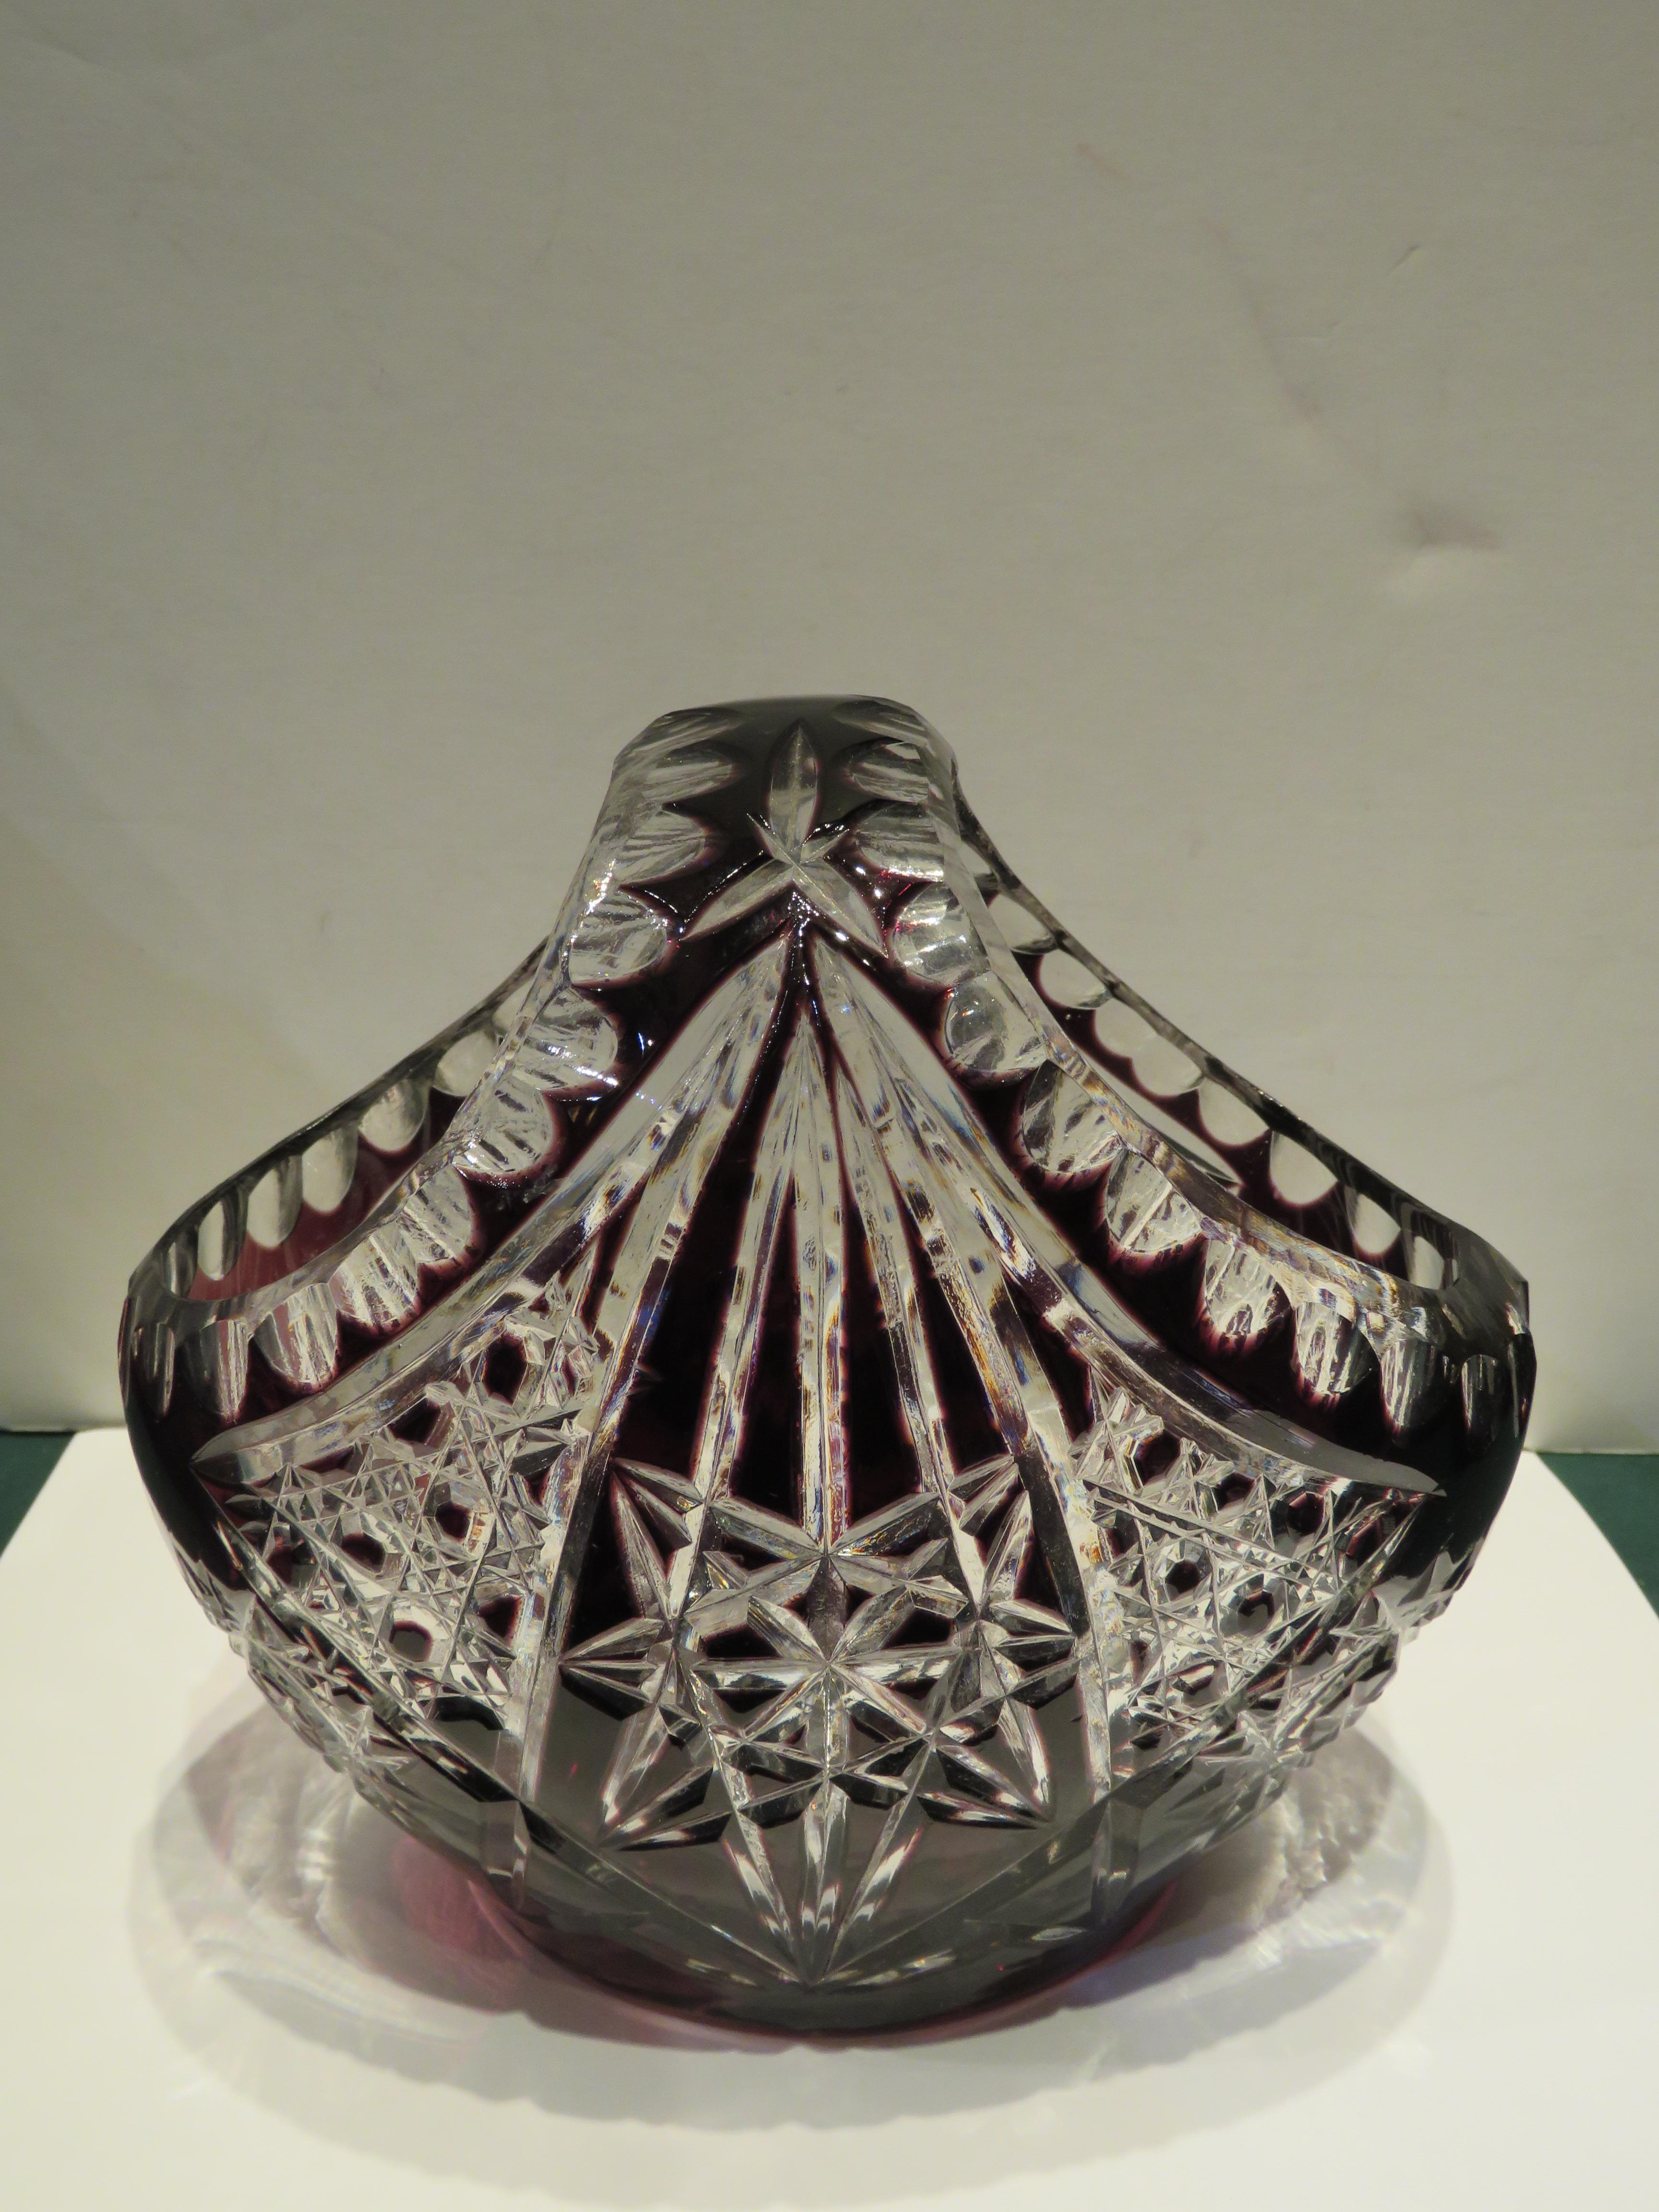 L'article suivant est un Rare Antique Lovely HEAVY HANDCUT Amethyst Hand Cut Crystal Glass Basket. Le panier est finement décoré d'un magnifique motif entouré de toutes parts.  
Approximativement : 7